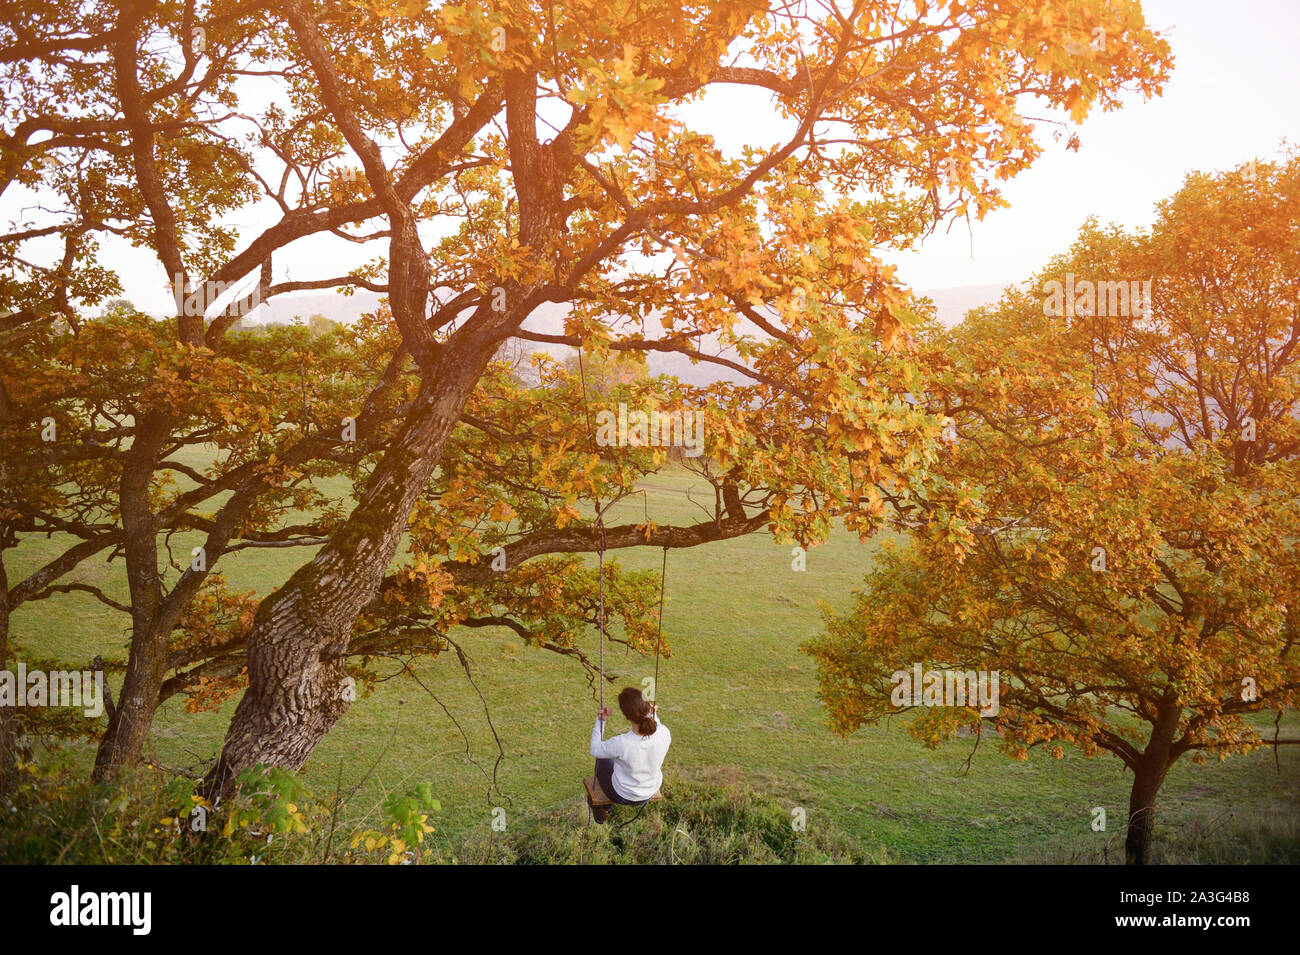 Fata onirico concetto di giovane ragazza basculante in rotazione sulla struttura ad albero con Giallo autunno foglie sul tramonto outdoor le attività per il tempo libero benessere stile di vita Foto Stock